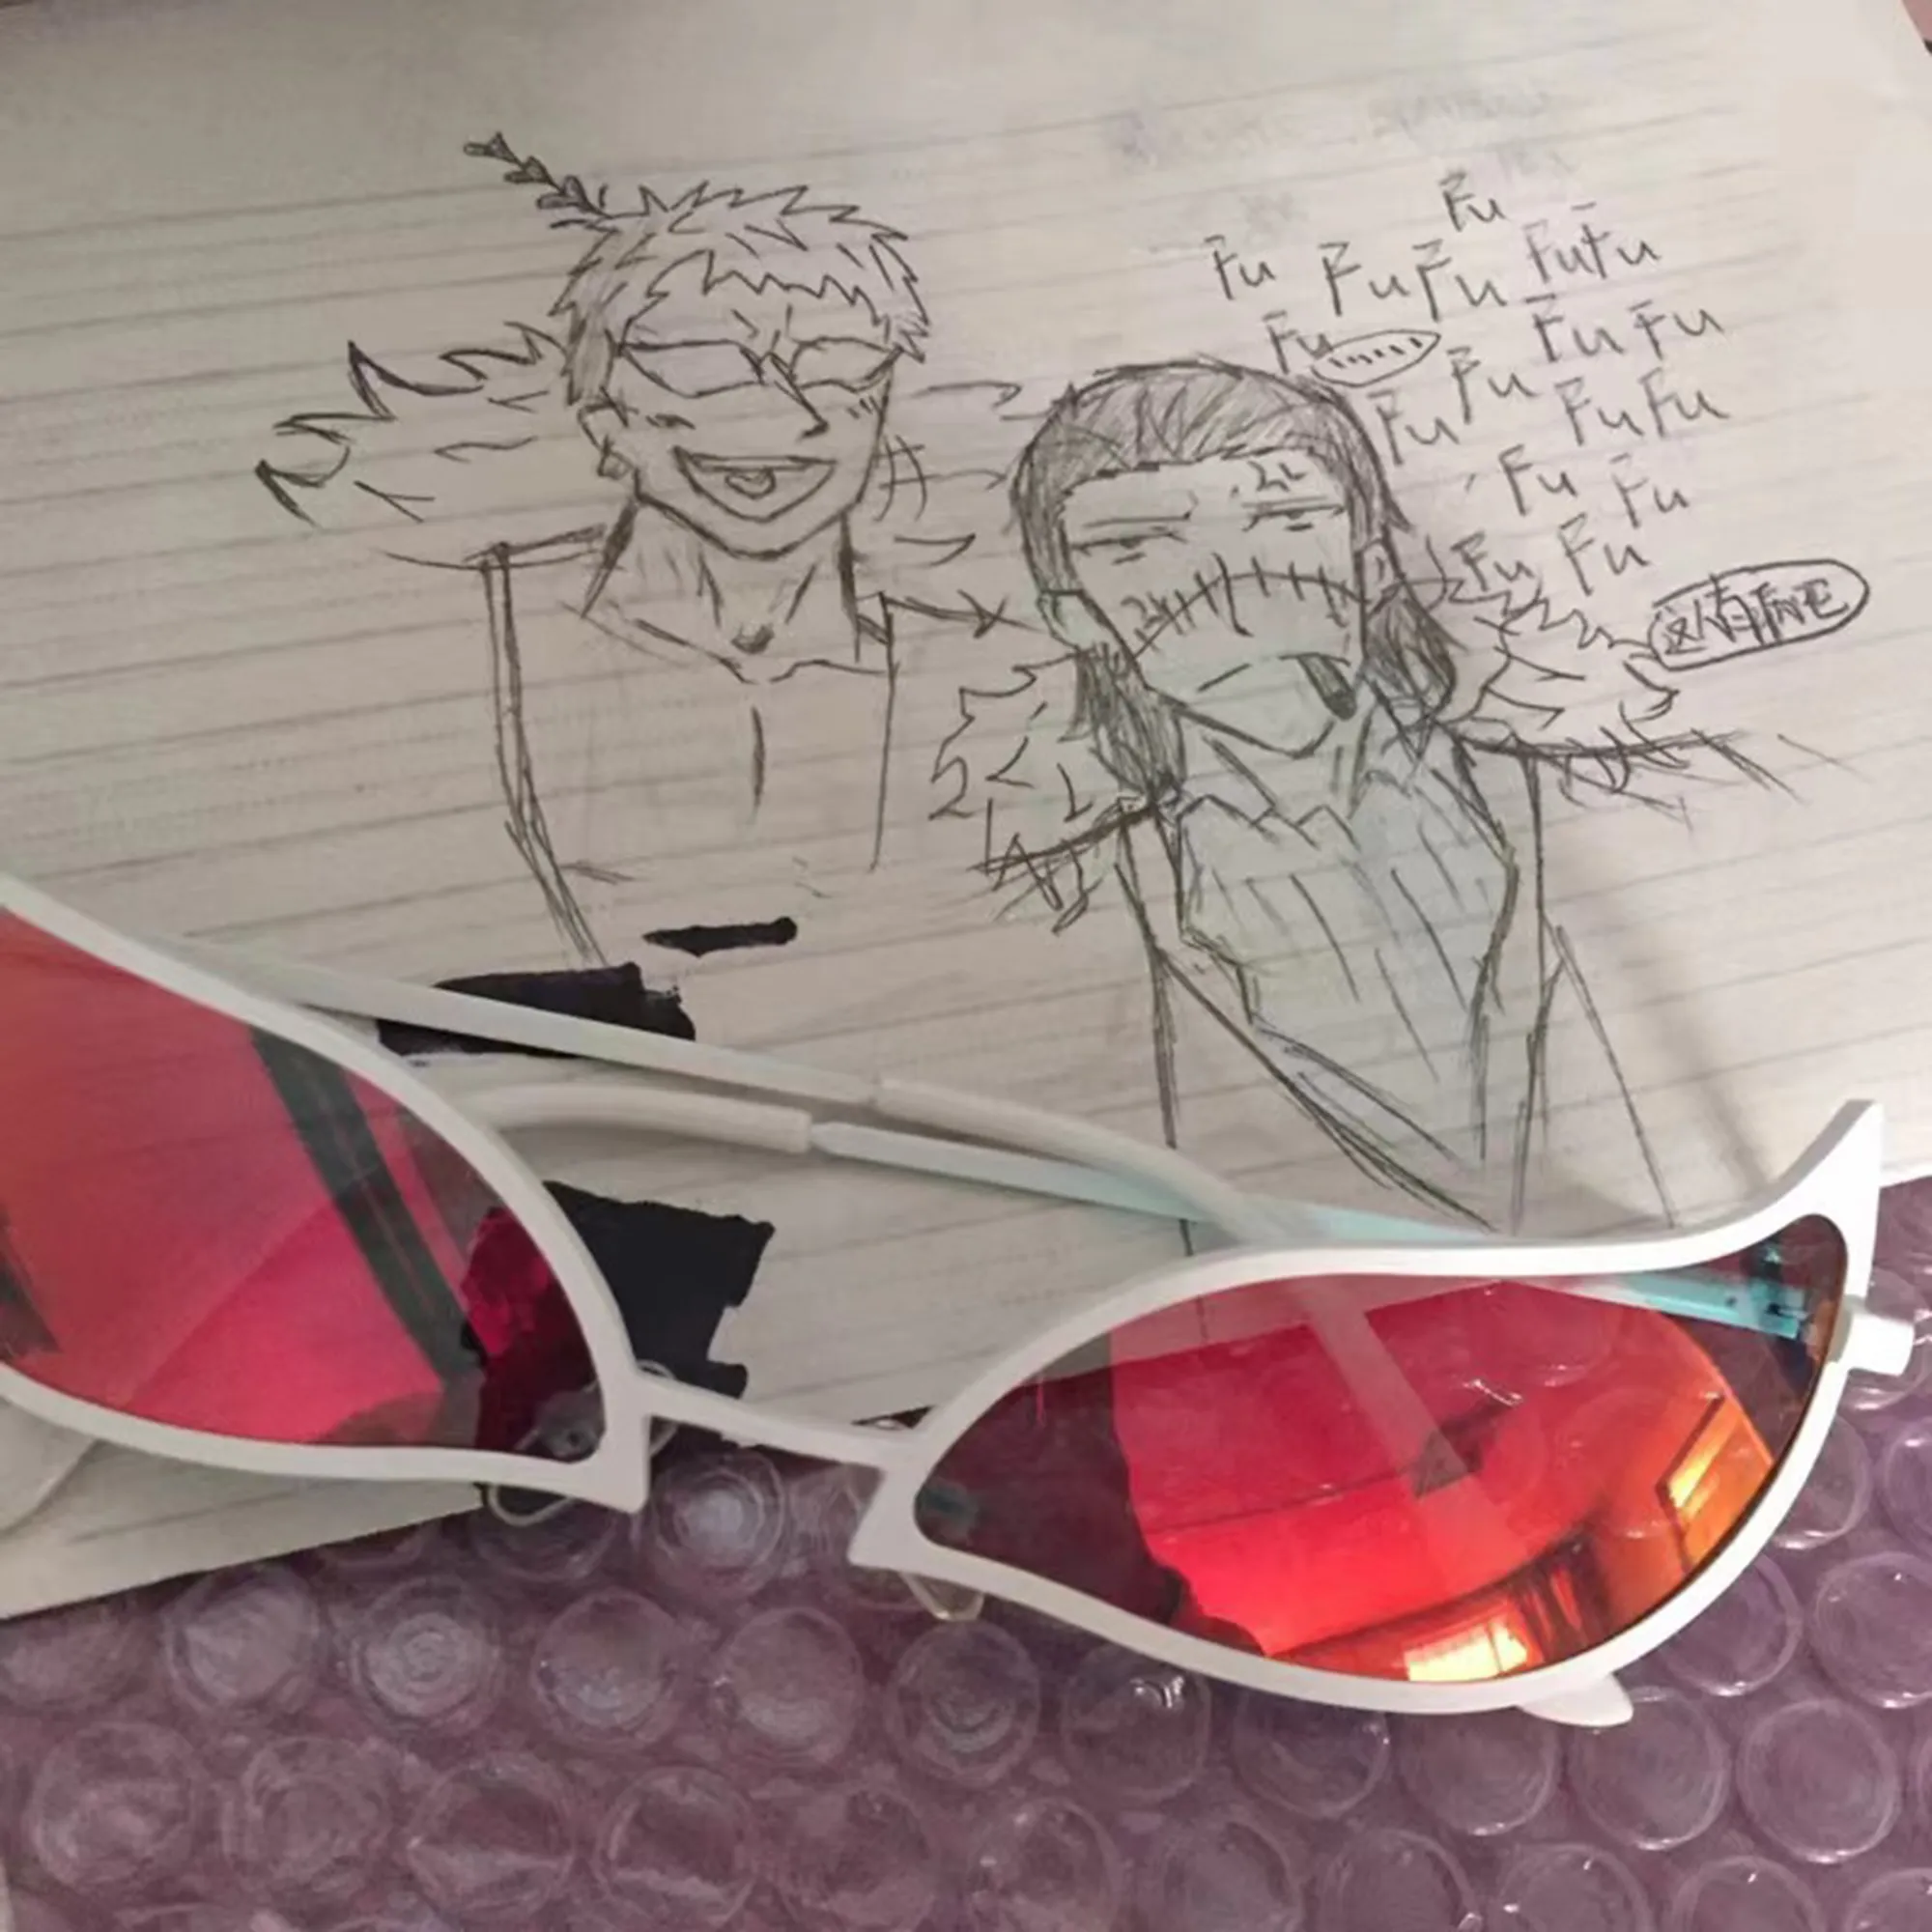 Donquixote Doflamingo Cosplay Óculos Anime Pvc Óculos de Sol